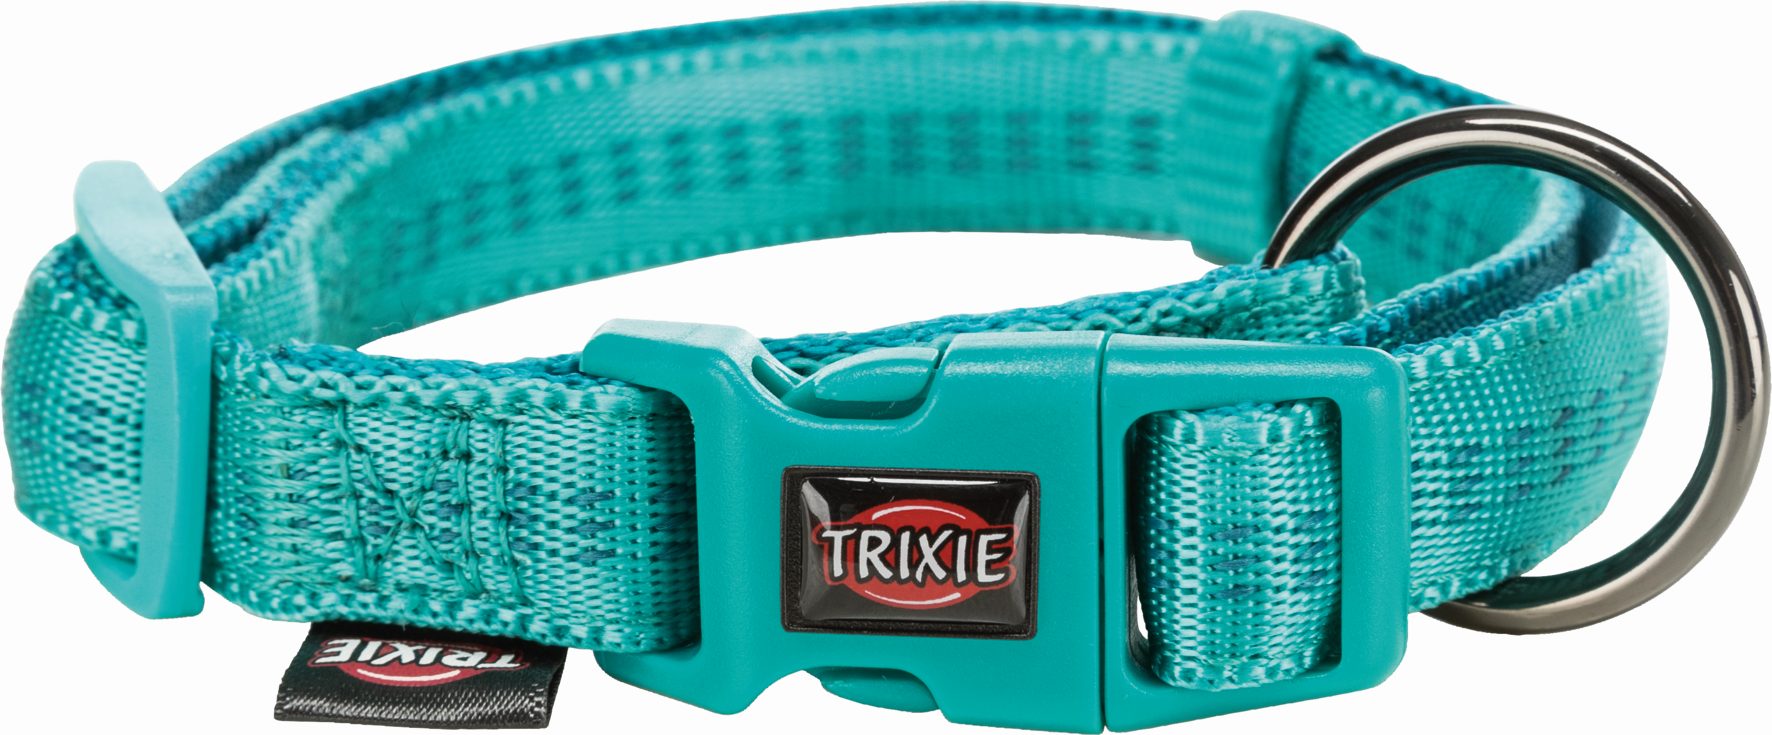  Ошейник Trixie Softline Elegance, XS-S, 25-35см, 15мм, океан/петроль